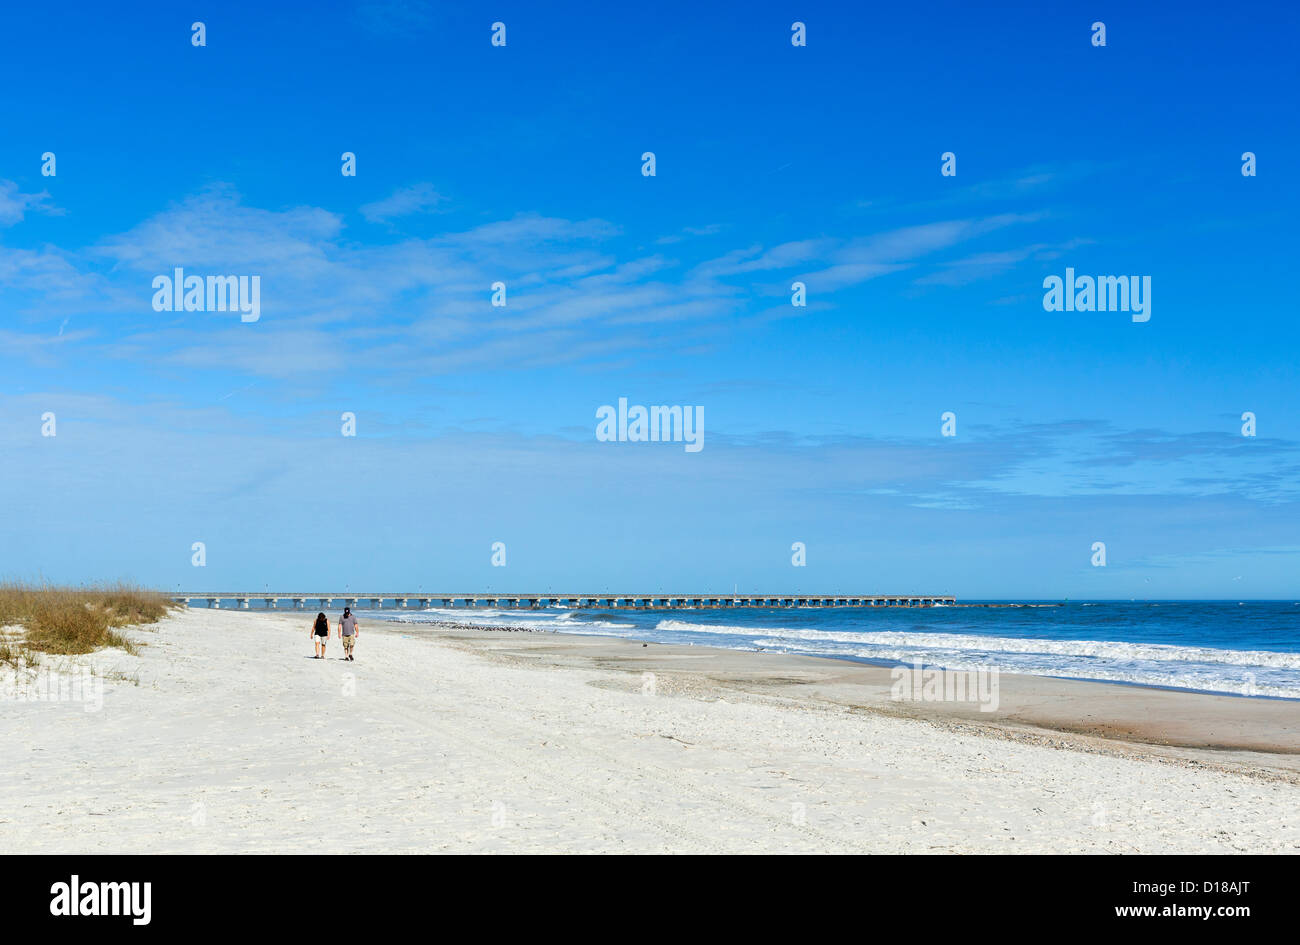 Plage et jetée de pêche, parc d'état de Fort Clinch, Fernandina Beach, Amelia Island, Floride, USA Banque D'Images